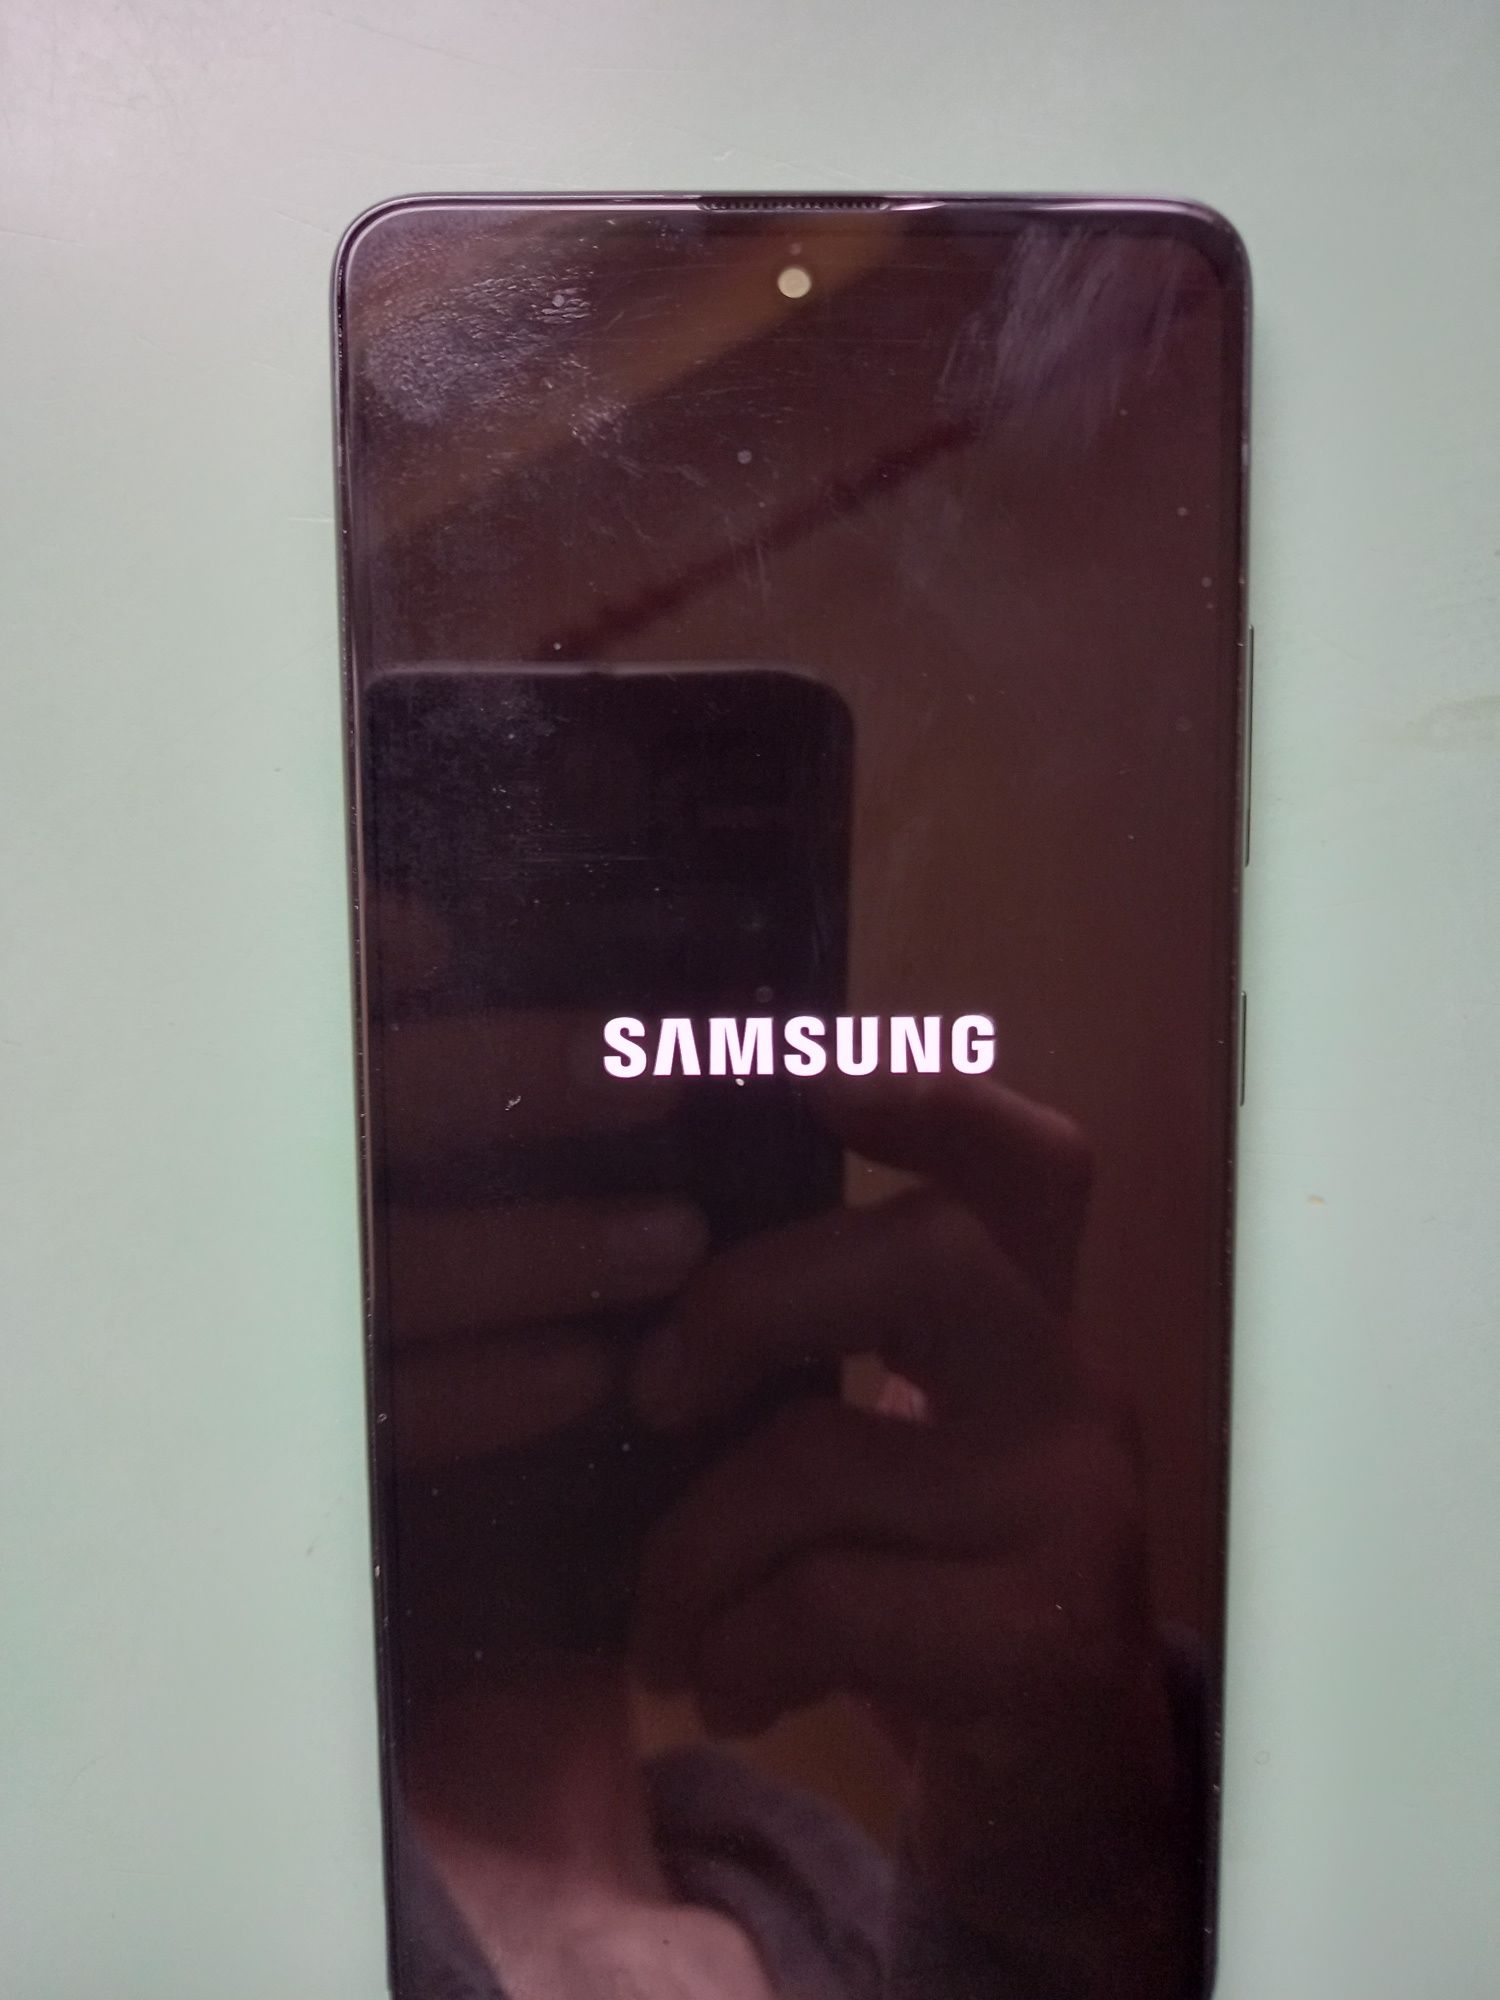 De vanzare telefon Samsung Galaxy A51-5G